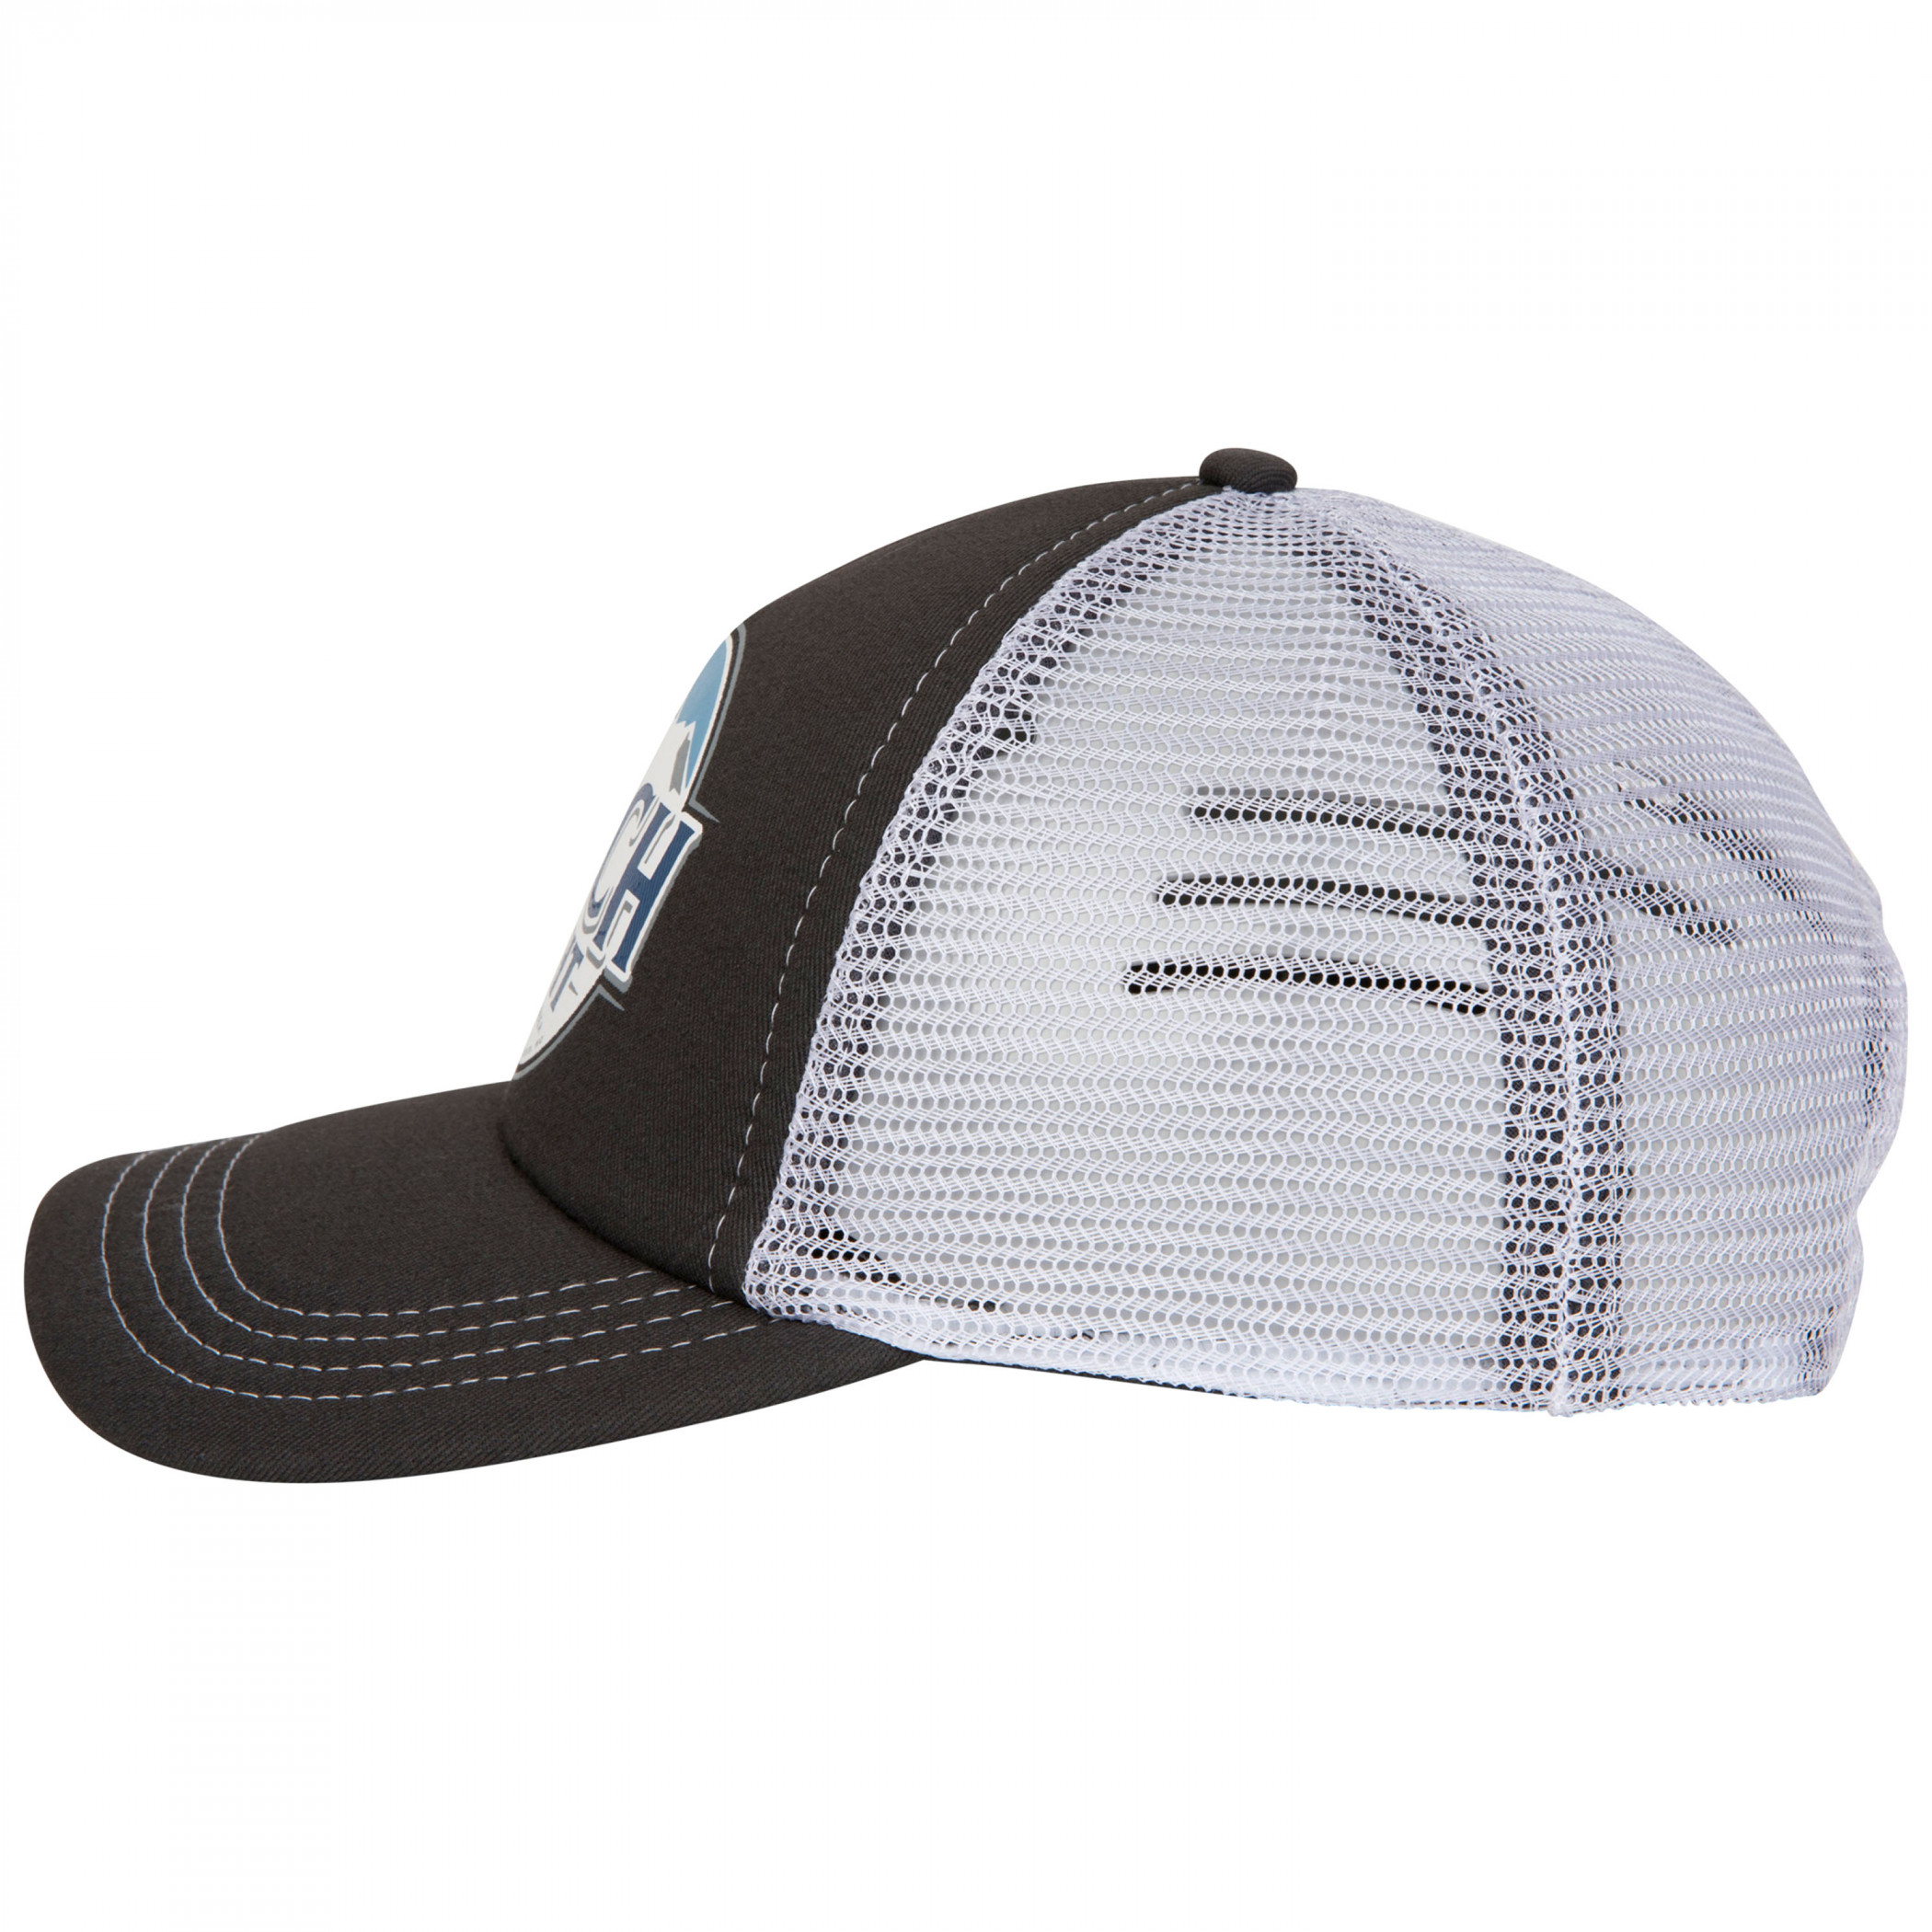 Busch Light Curved Brim Snapback Hat Grey